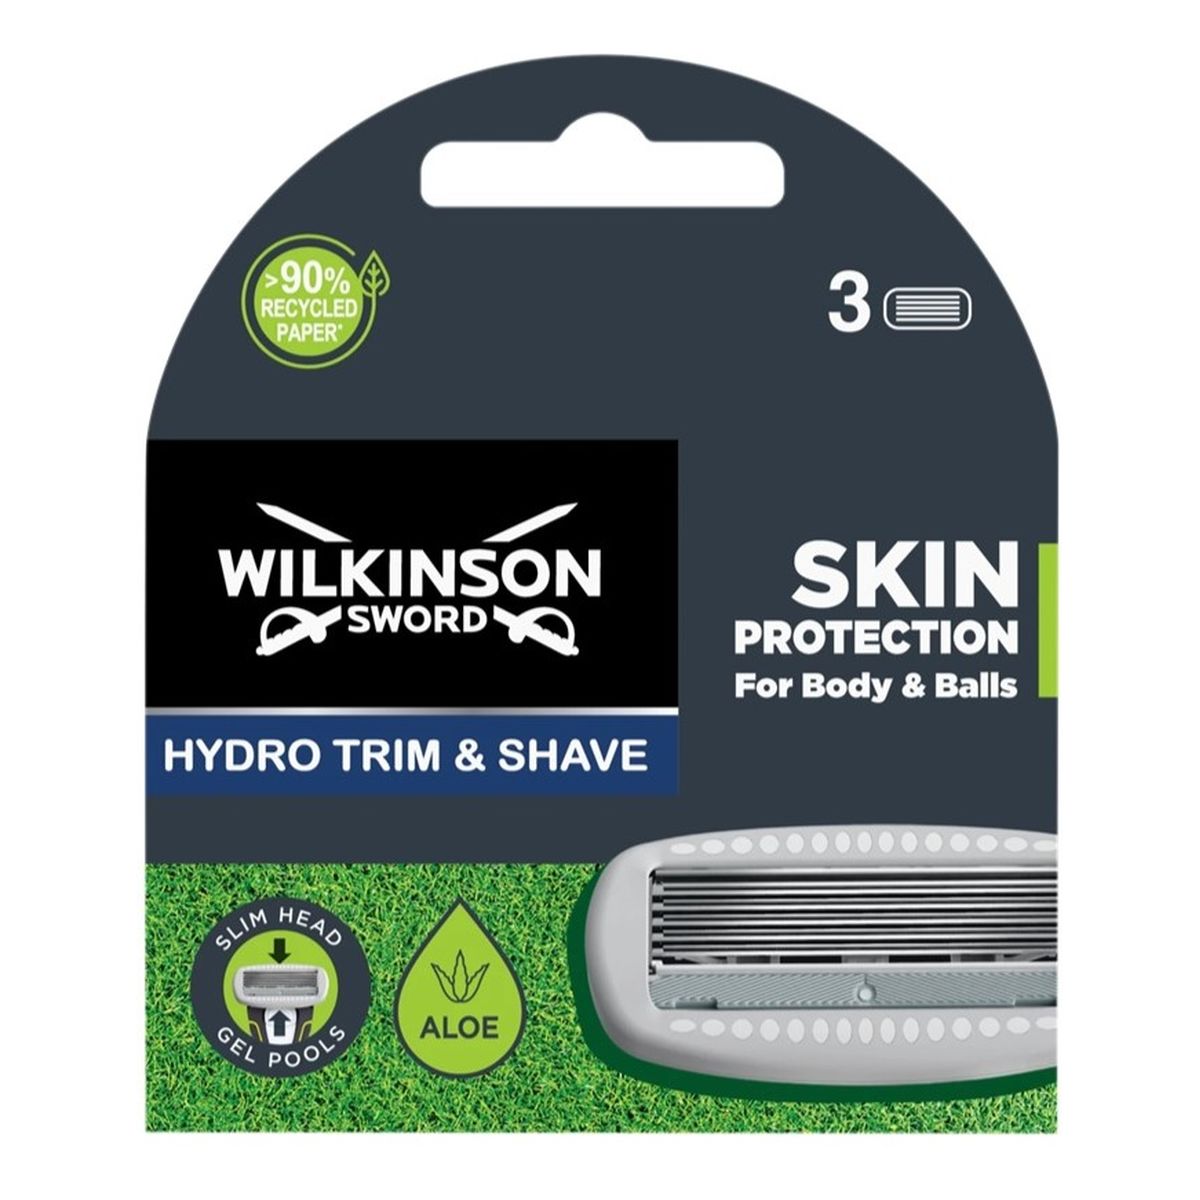 Wilkinson Hydro trim shave ostrza do maszynki do golenia i stylizacji 3szt.